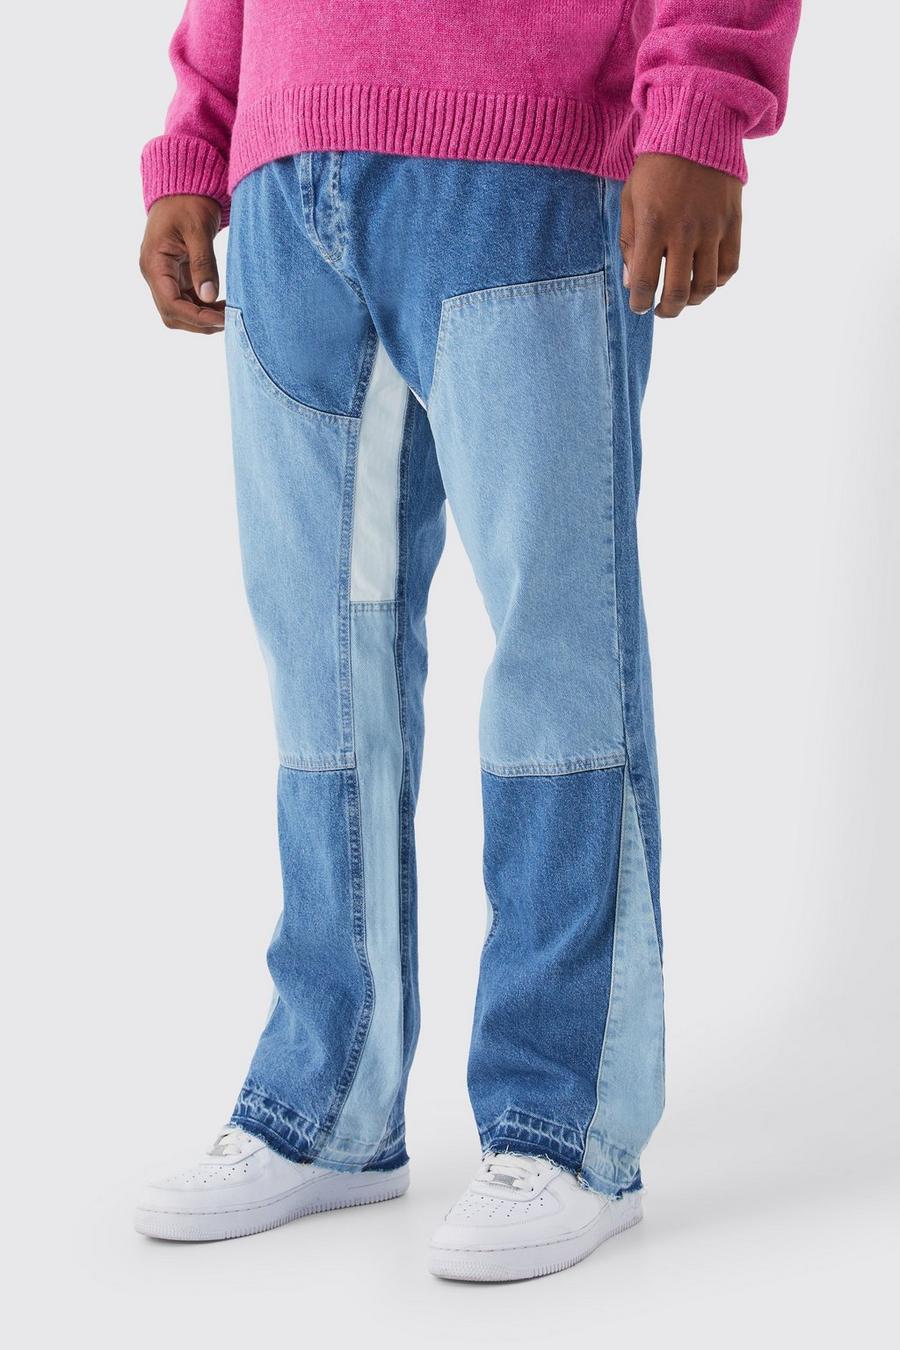 Jeans Plus Size Slim Fit in denim rigido a zampa con inserti stile Carpenter a contrasto, Light blue